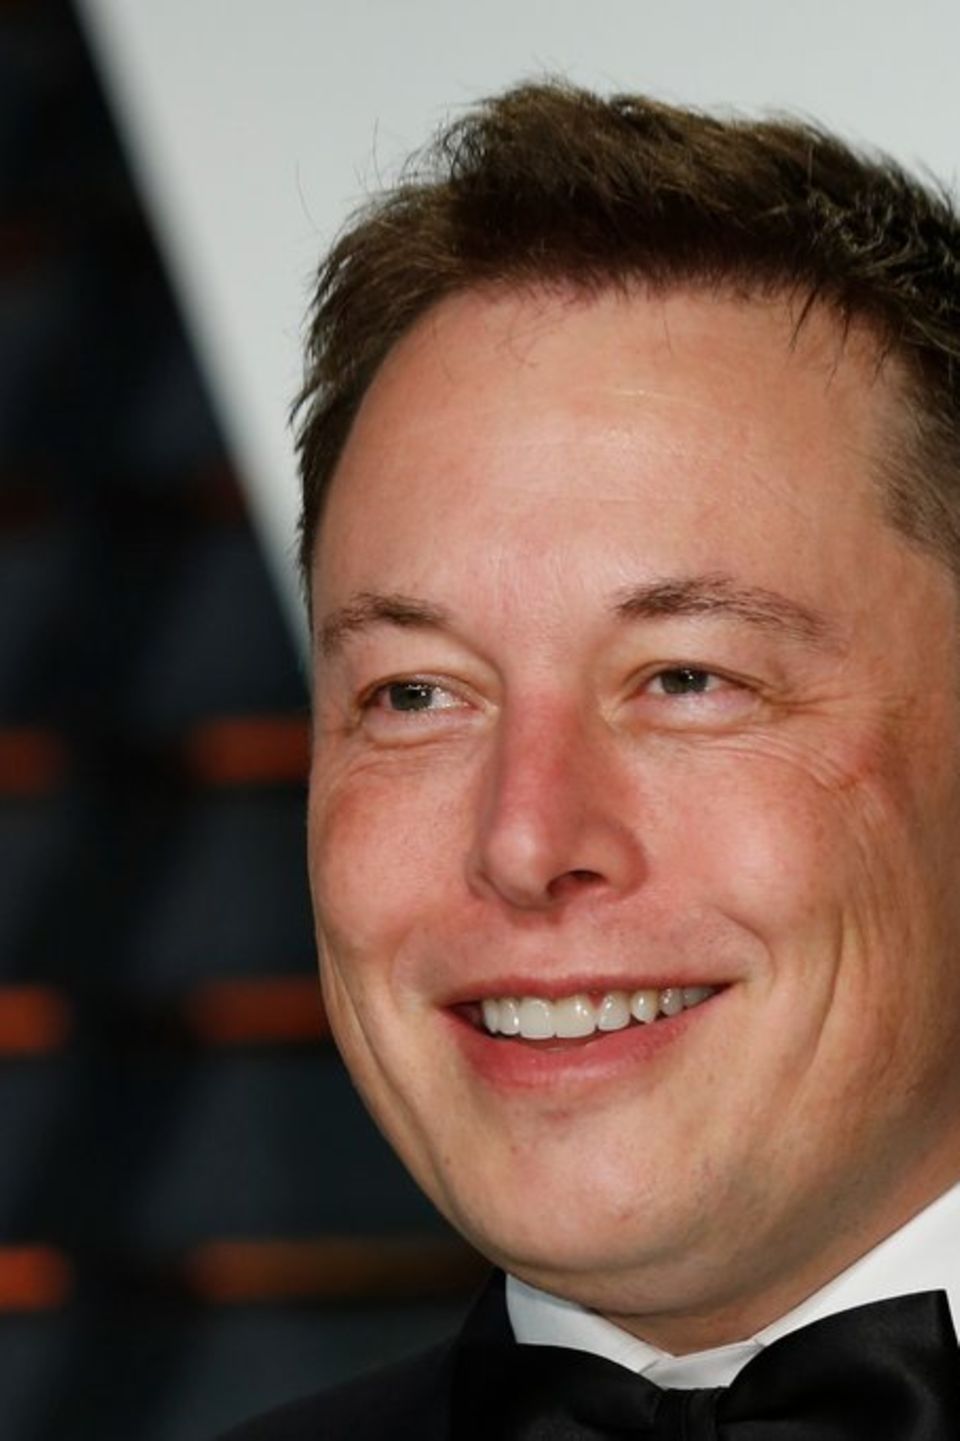 Elon Musk hatte ein Jahr lang eine On-and-Off-Beziehung mit Amber Heard. In einer neuen Biographie werden auch intime Details